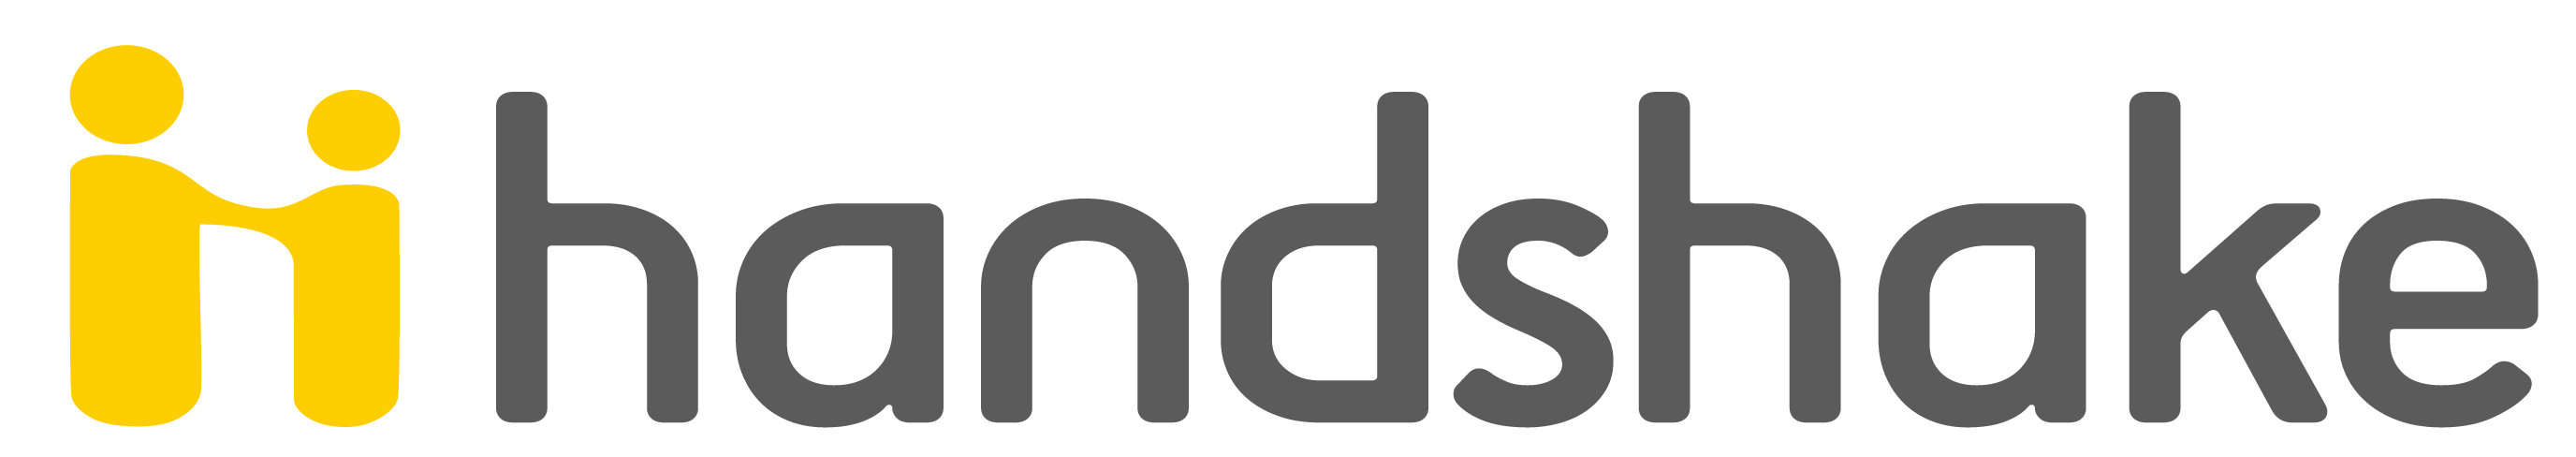 Handshake Word Logo